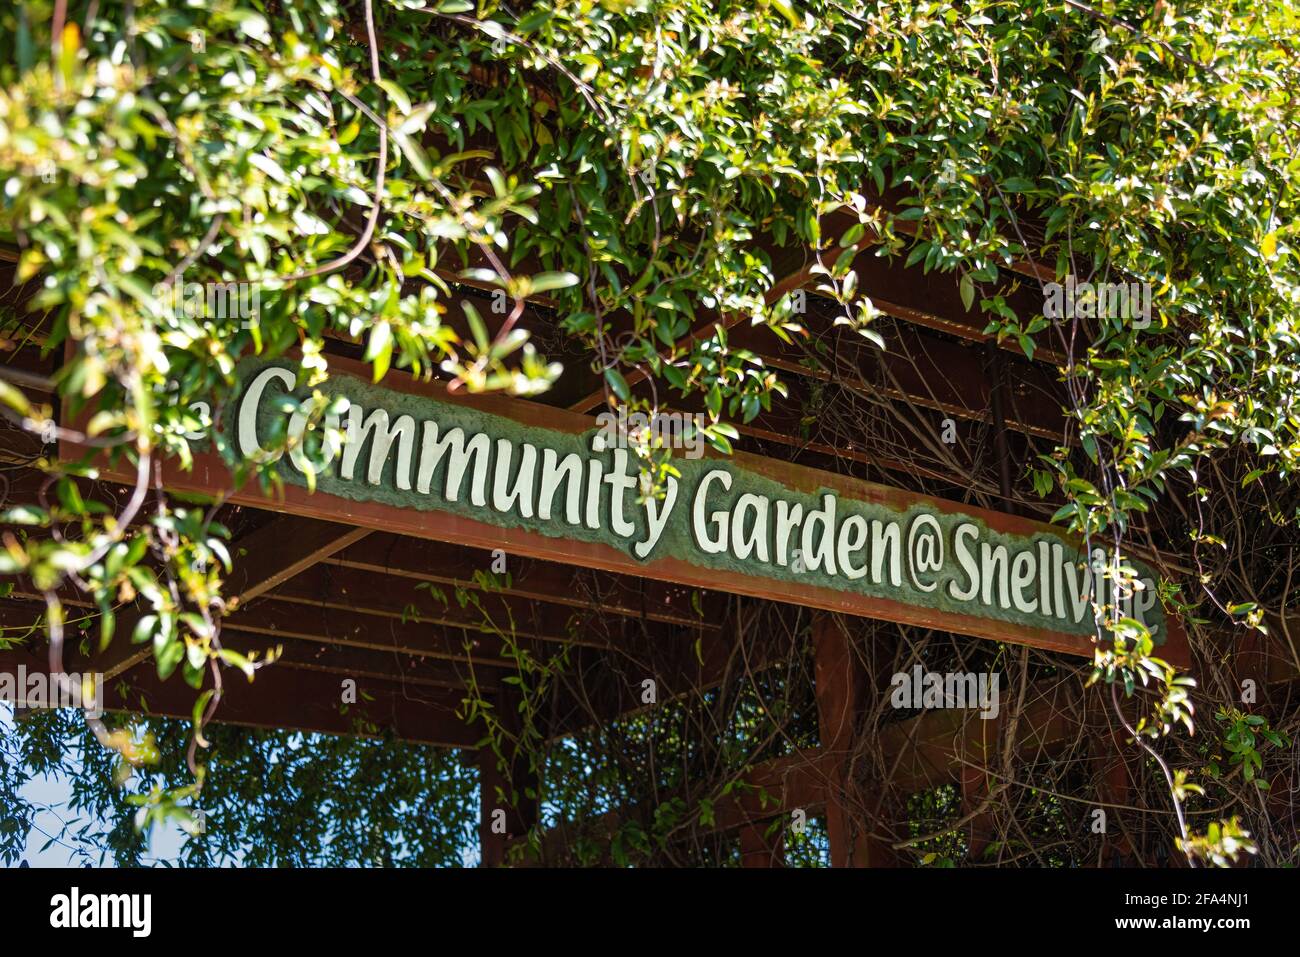 Der Community Garden @ Snellville in Metro Atlanta ist ein nachhaltiger Garten, der Familien Raum zum Anbau von Lebensmitteln und Blumen bietet. (USA) Stockfoto